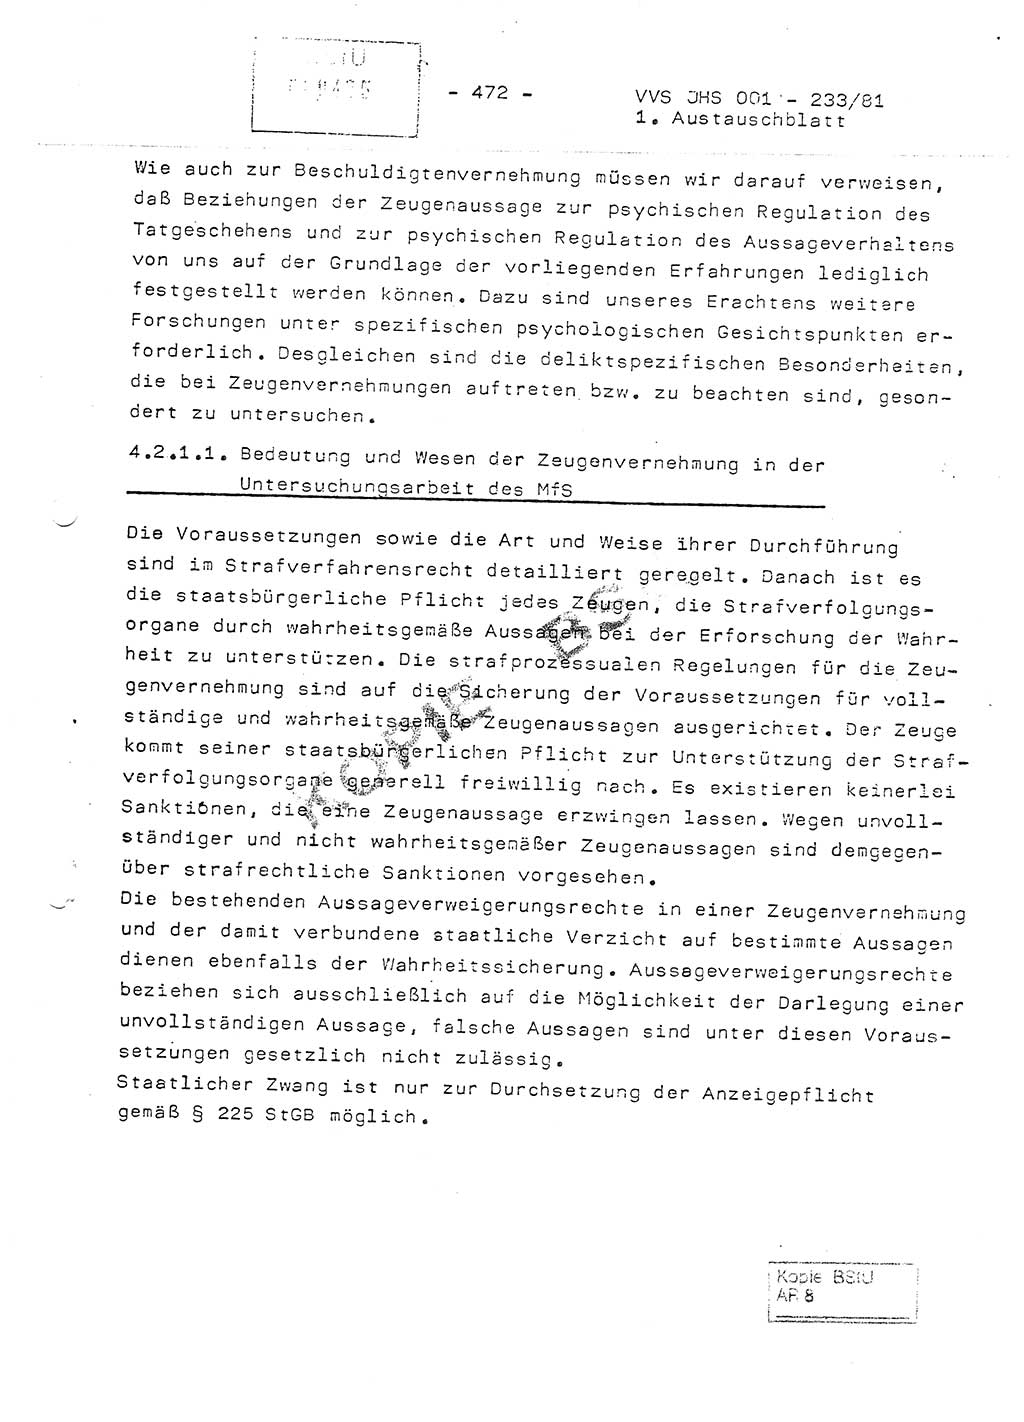 Dissertation Oberstleutnant Horst Zank (JHS), Oberstleutnant Dr. Karl-Heinz Knoblauch (JHS), Oberstleutnant Gustav-Adolf Kowalewski (HA Ⅸ), Oberstleutnant Wolfgang Plötner (HA Ⅸ), Ministerium für Staatssicherheit (MfS) [Deutsche Demokratische Republik (DDR)], Juristische Hochschule (JHS), Vertrauliche Verschlußsache (VVS) o001-233/81, Potsdam 1981, Blatt 472 (Diss. MfS DDR JHS VVS o001-233/81 1981, Bl. 472)